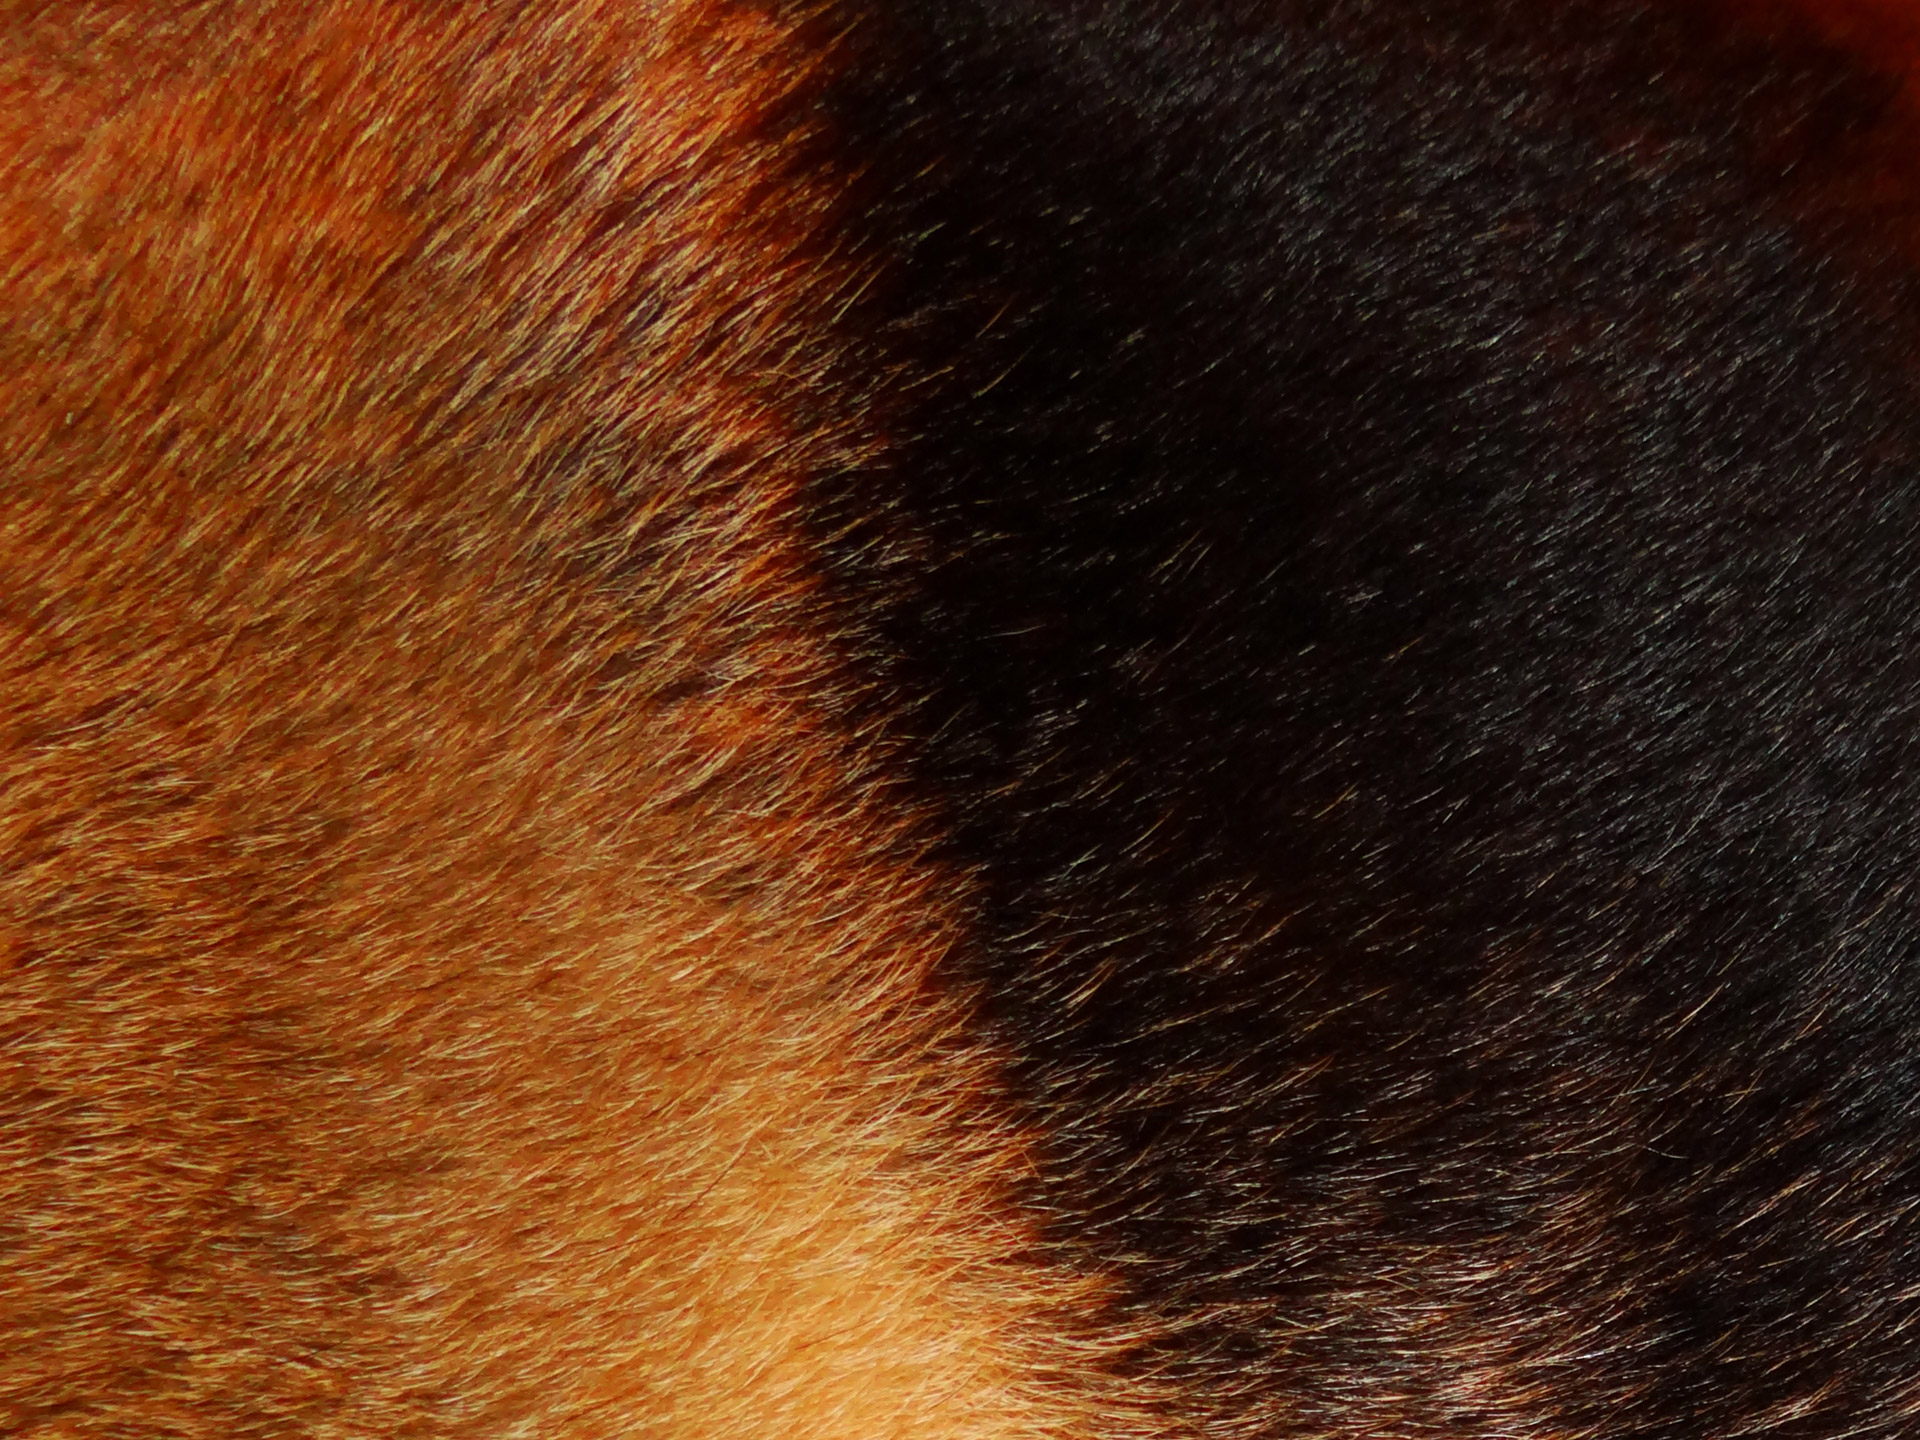 German Shepherd Fur 2 is n angle showing the dark and light fur on a German Shepherd.